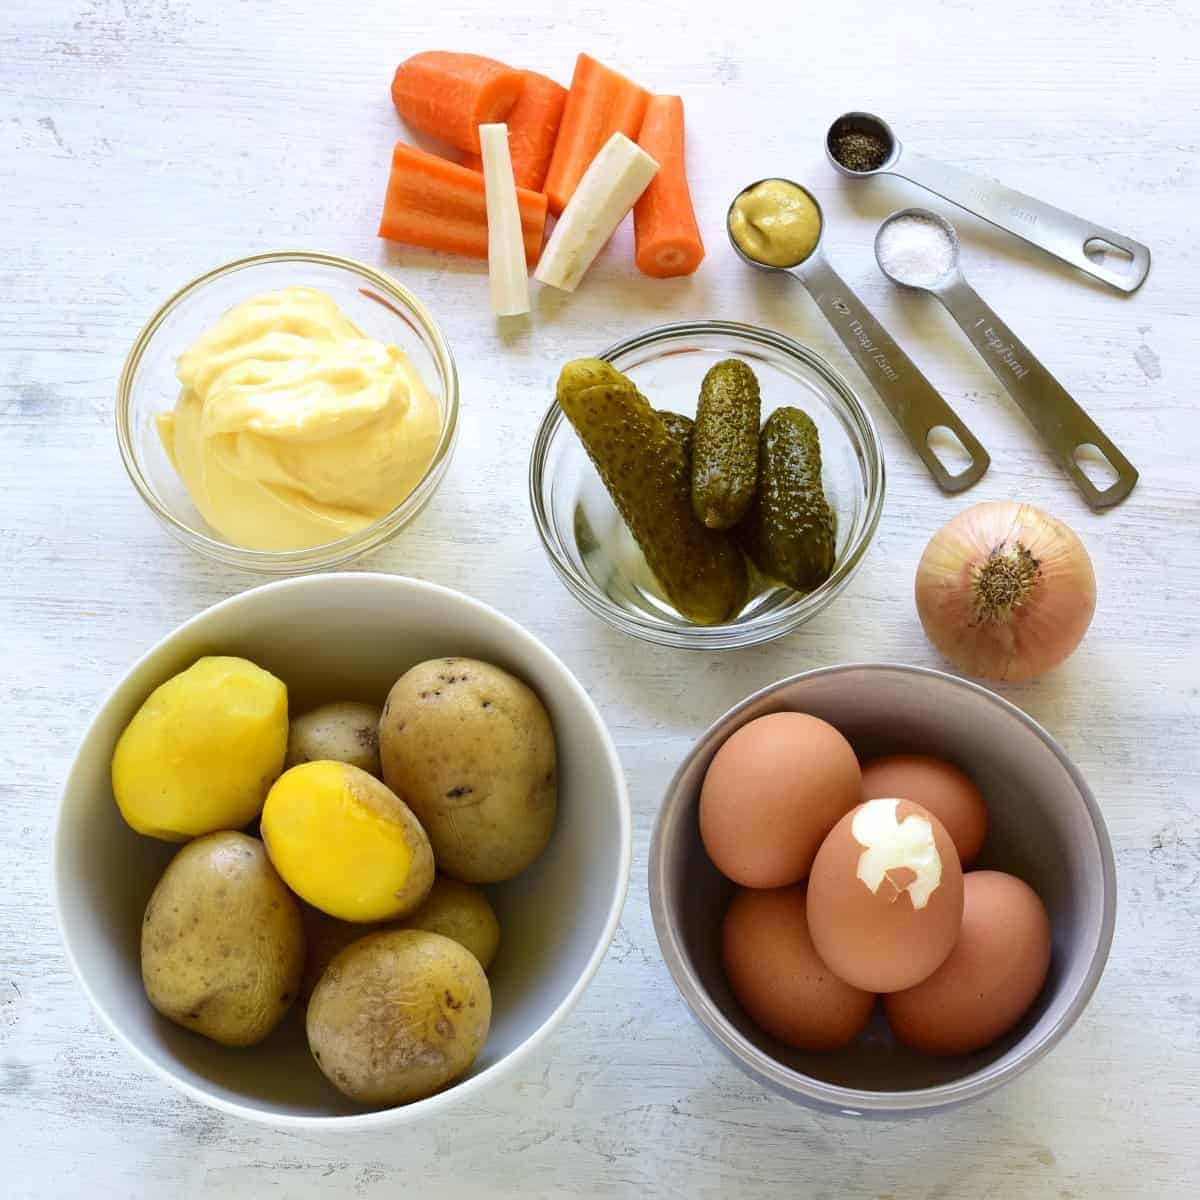 czech bramborový salát ingredients